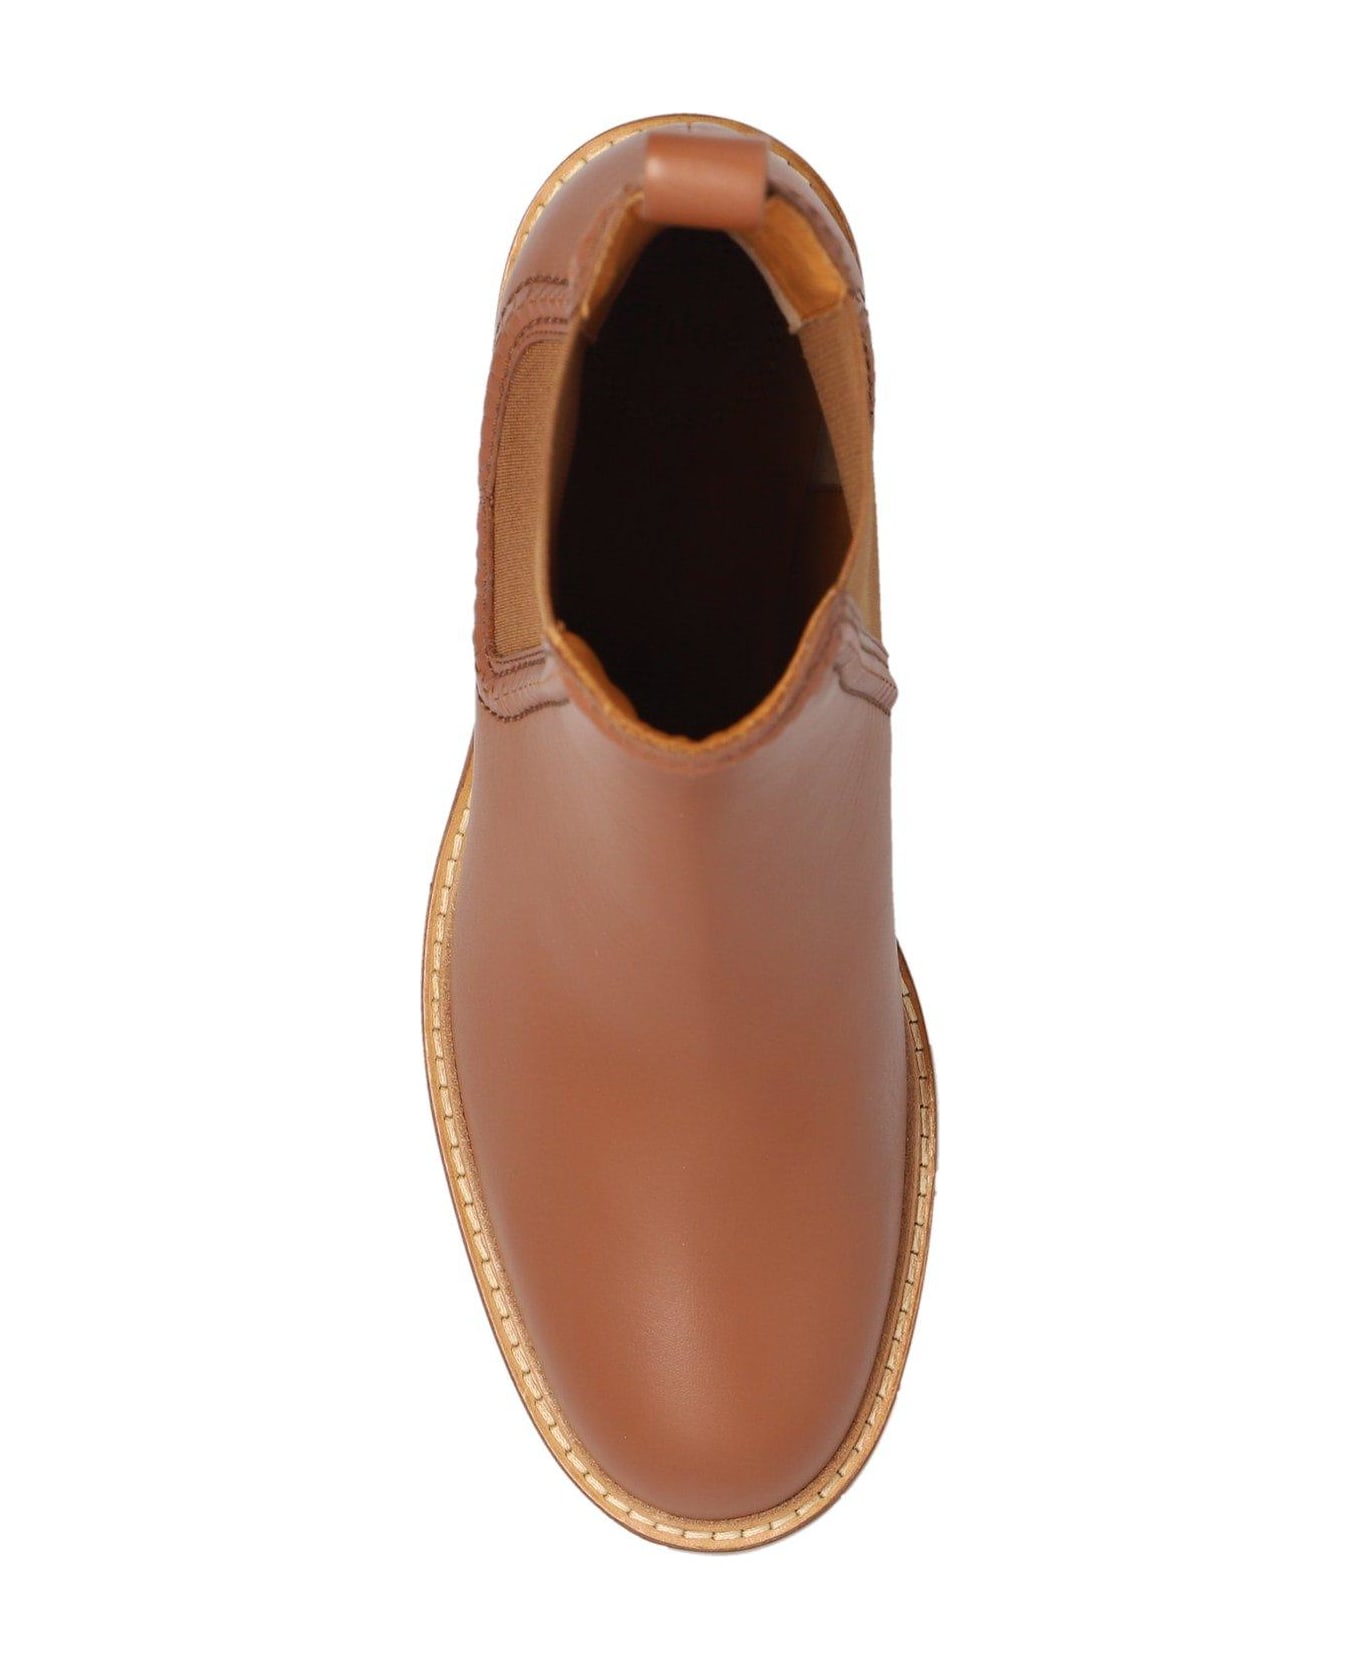 Chloé Mallo Heeled Boots - Caramello